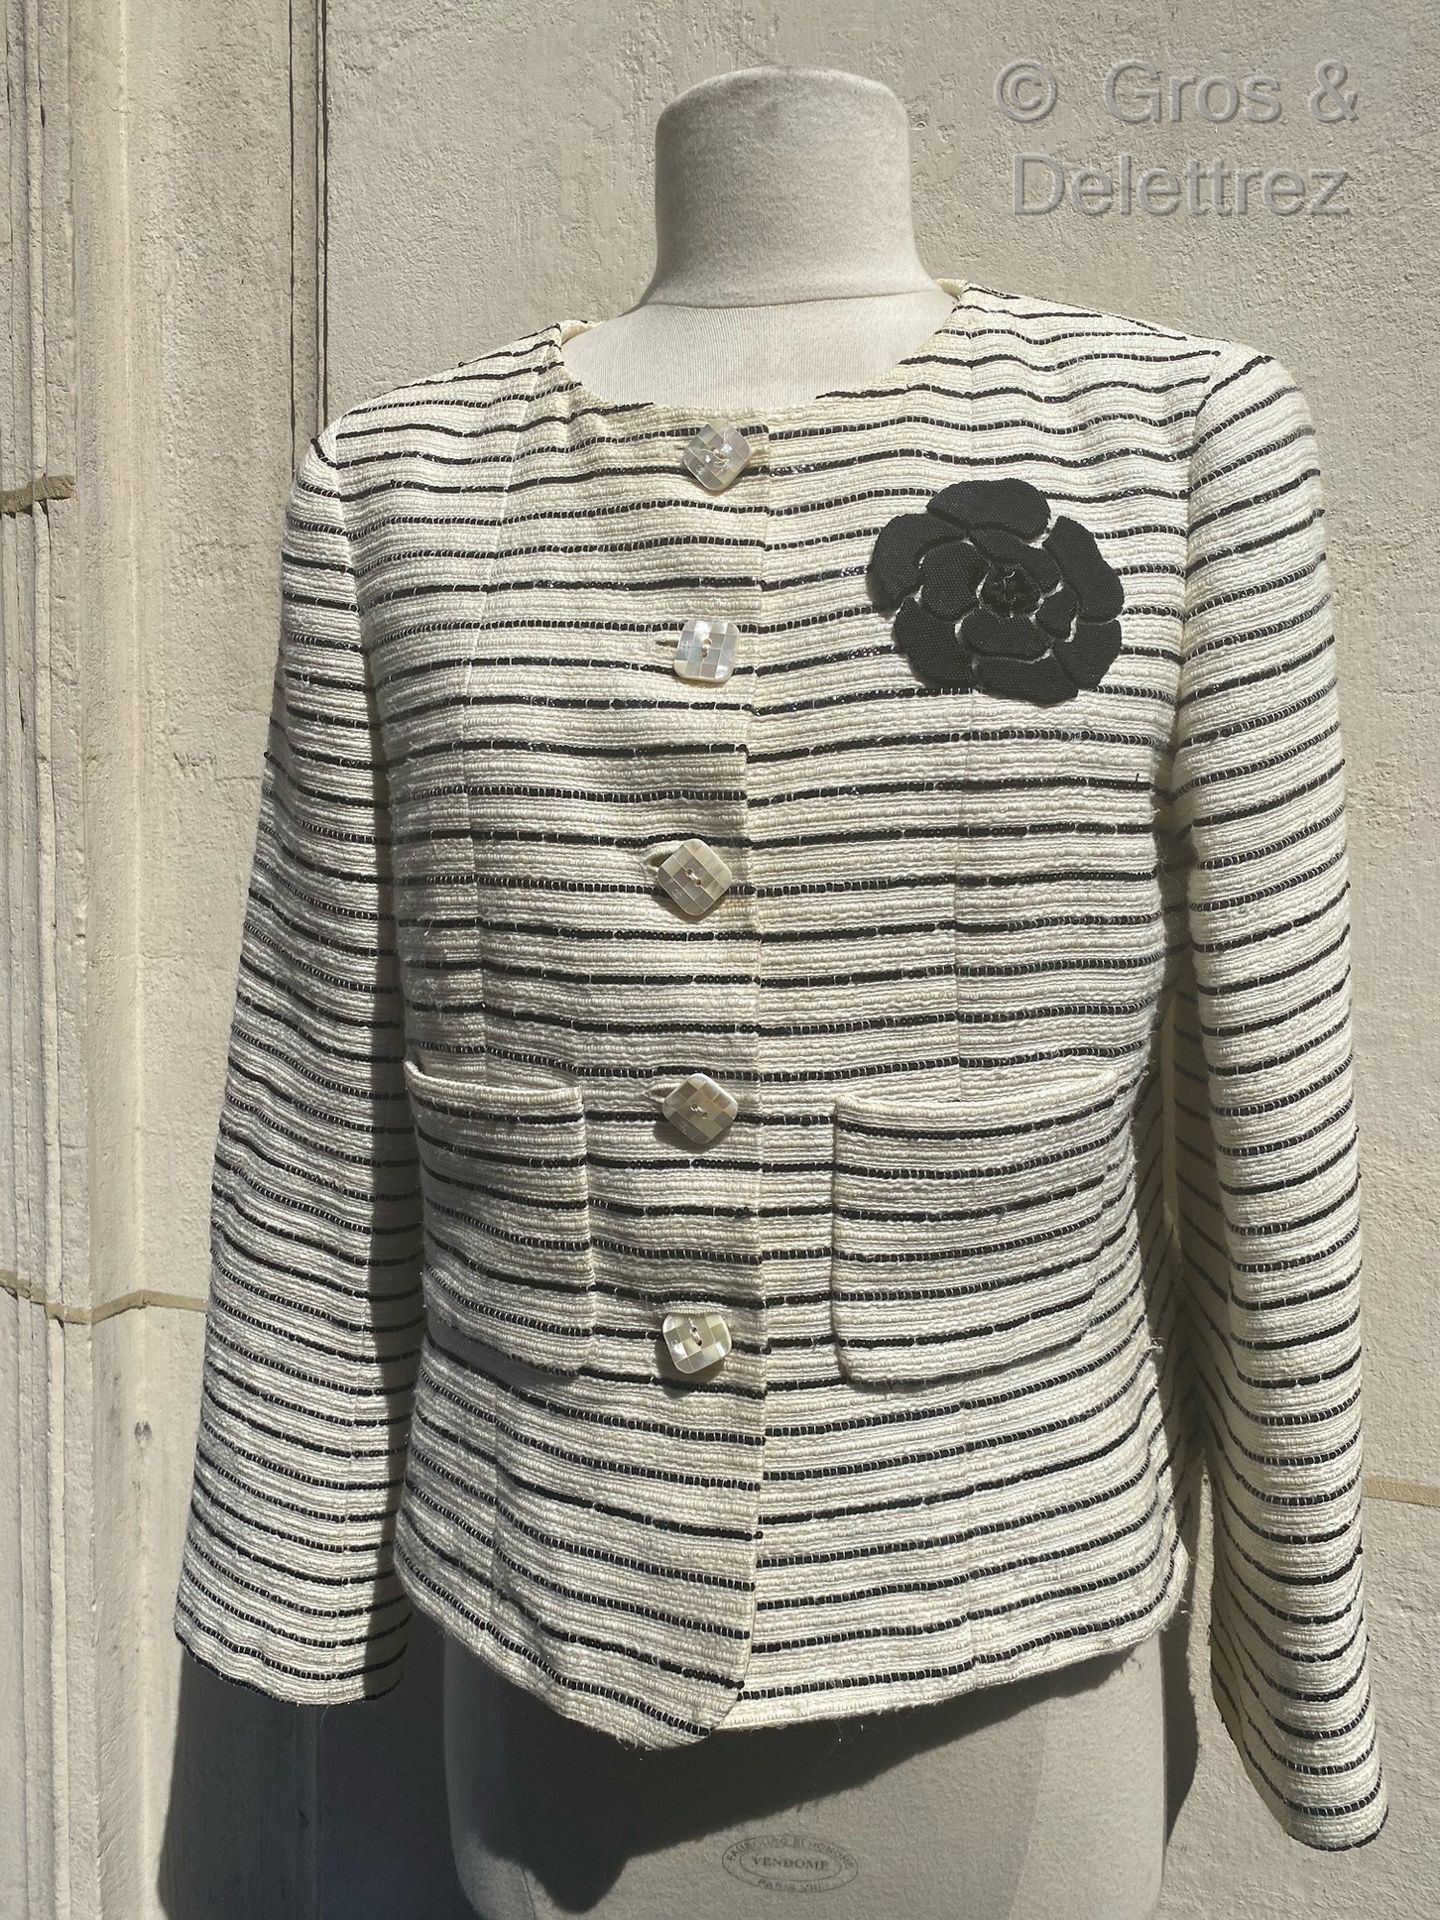 CHANEL Ca. 2001

Kurze Jacke aus ecrufarbenem Tweed mit Ton-in-Ton-Streifen, dur&hellip;